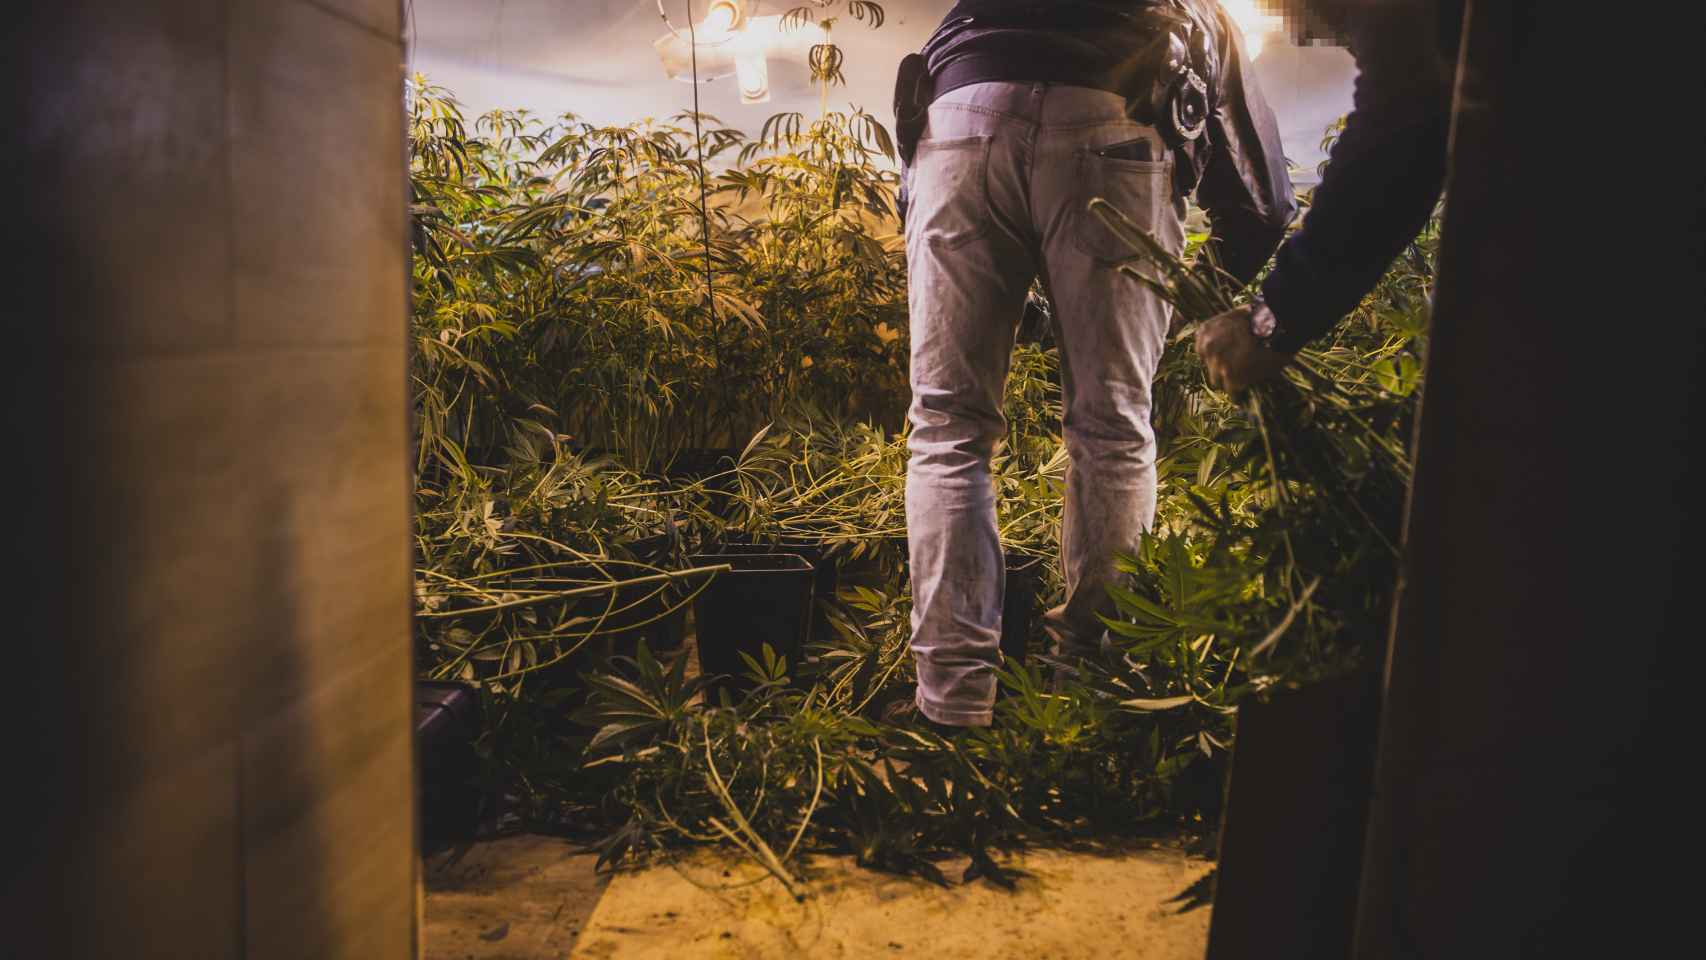 Un agente corta marihuana en una vivienda en Loja (Granada).